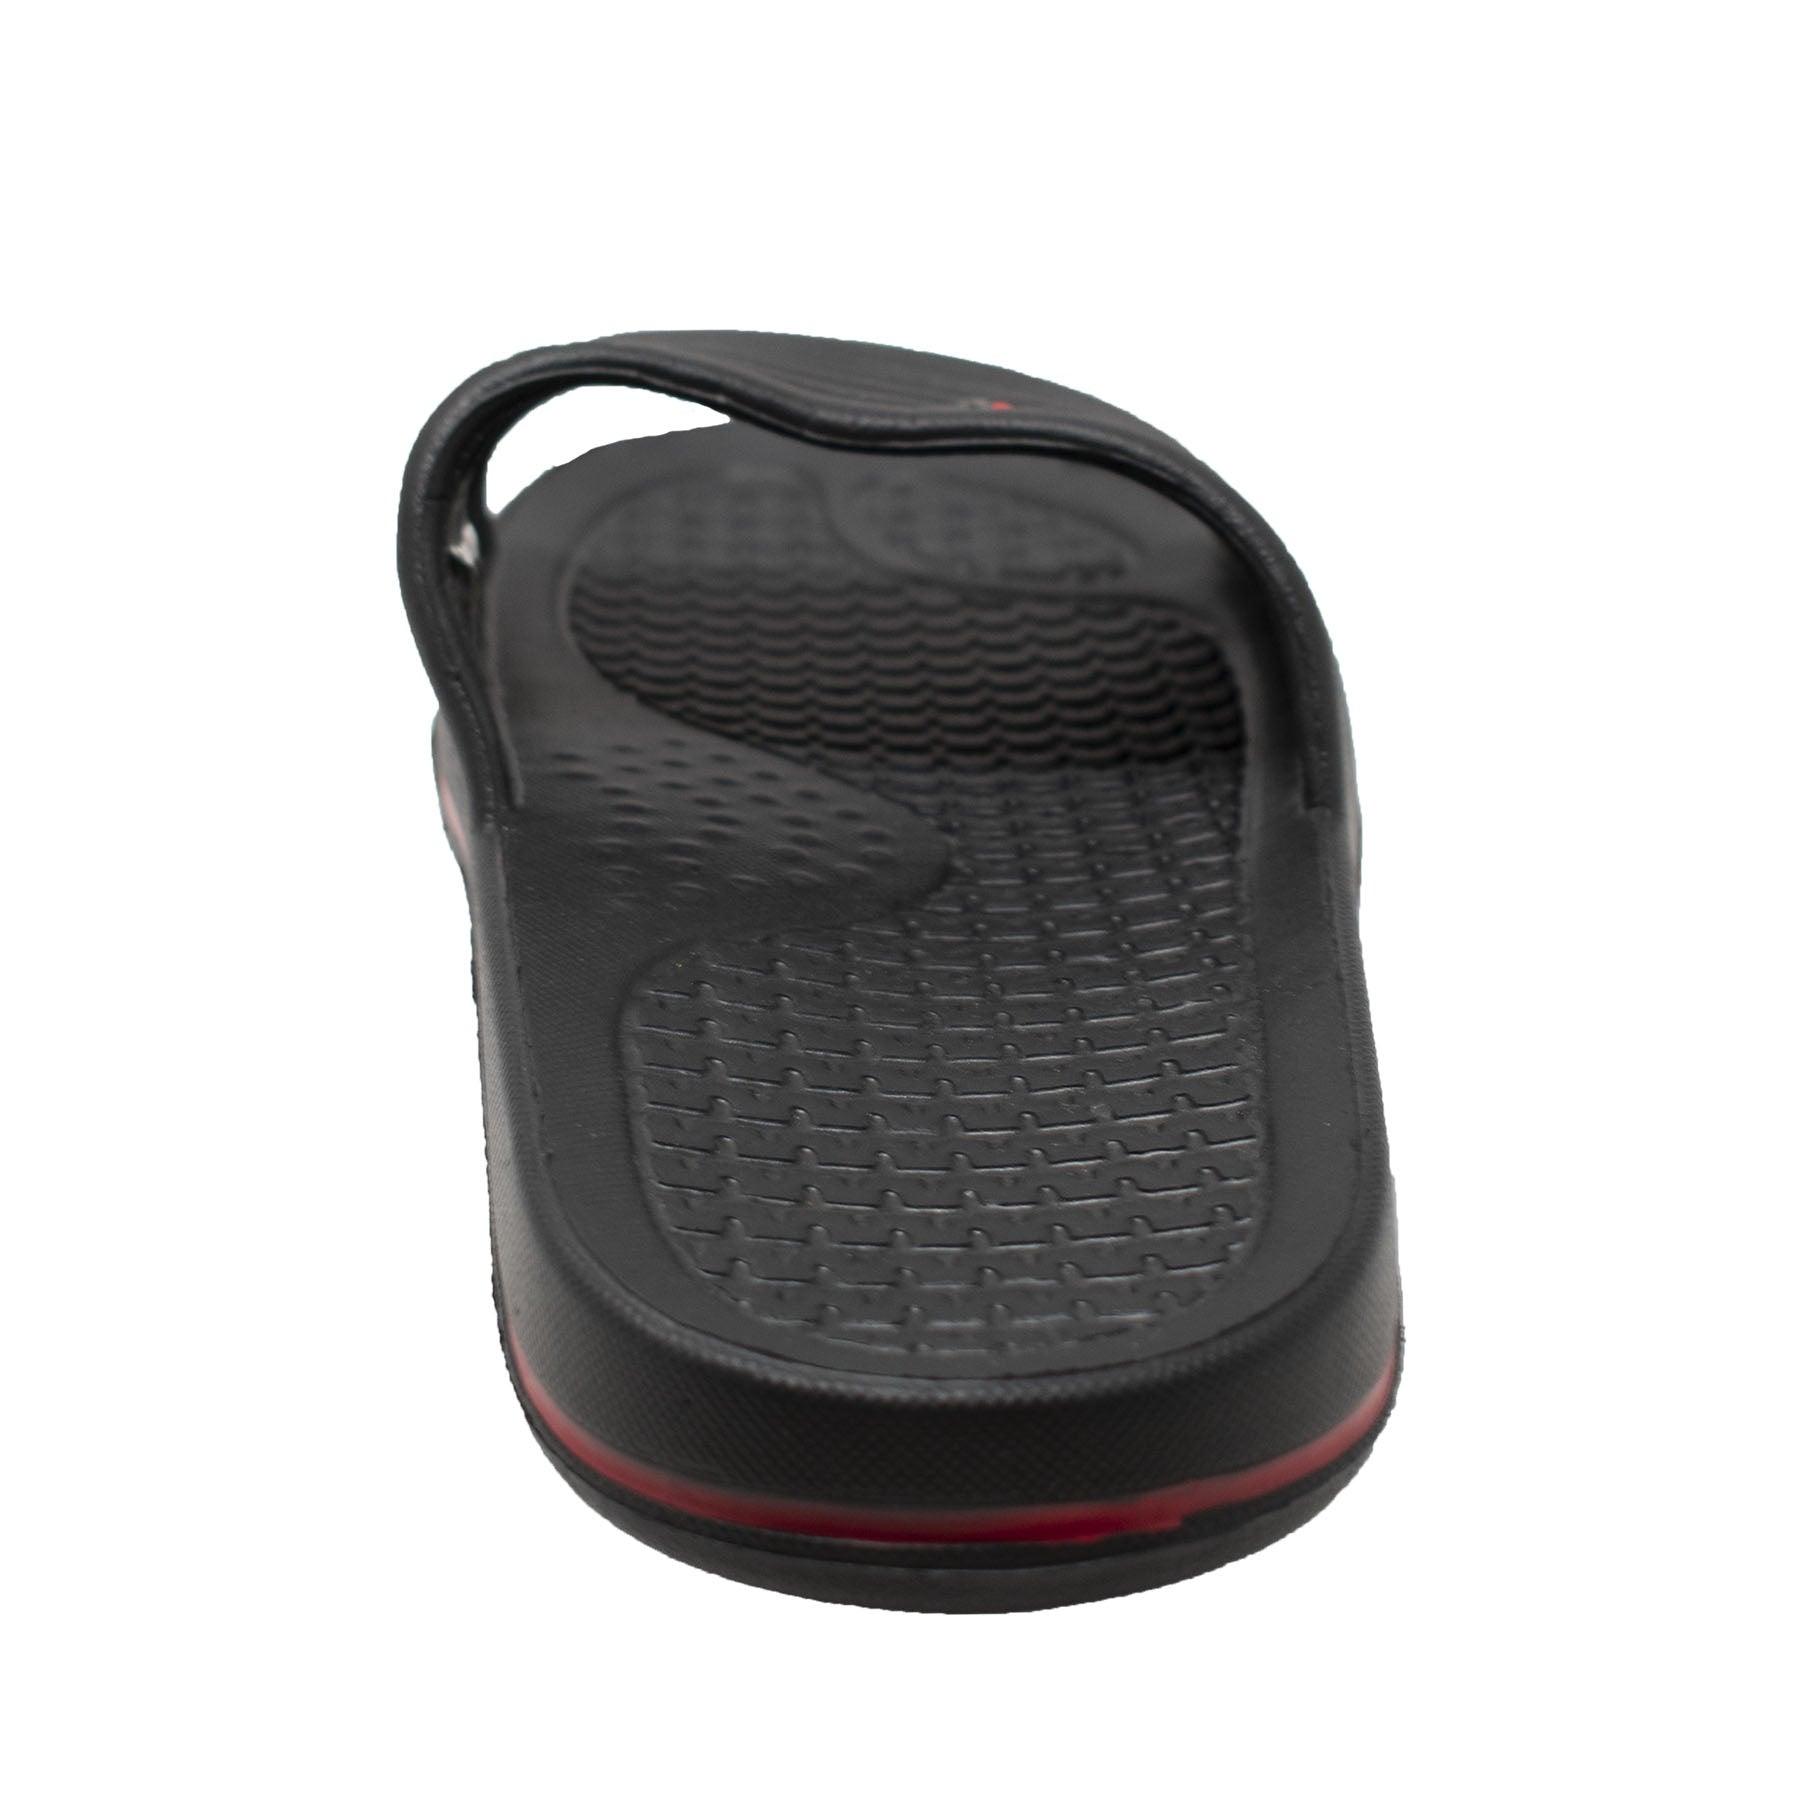 Tecs Men's EVA Comfort Slip On Sandal Black - Flyclothing LLC